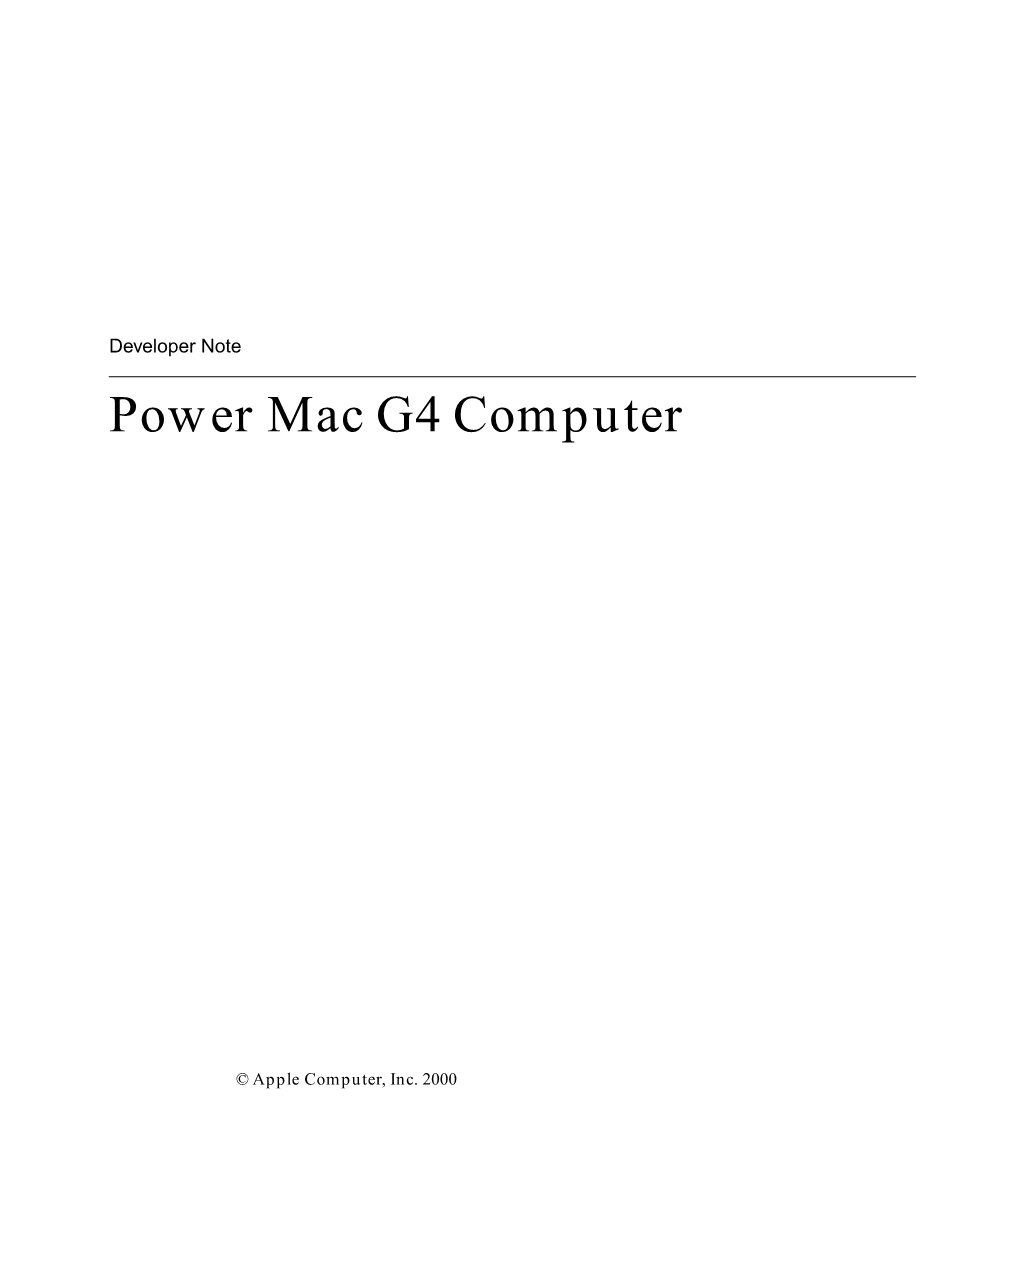 Power Mac G4 Computer